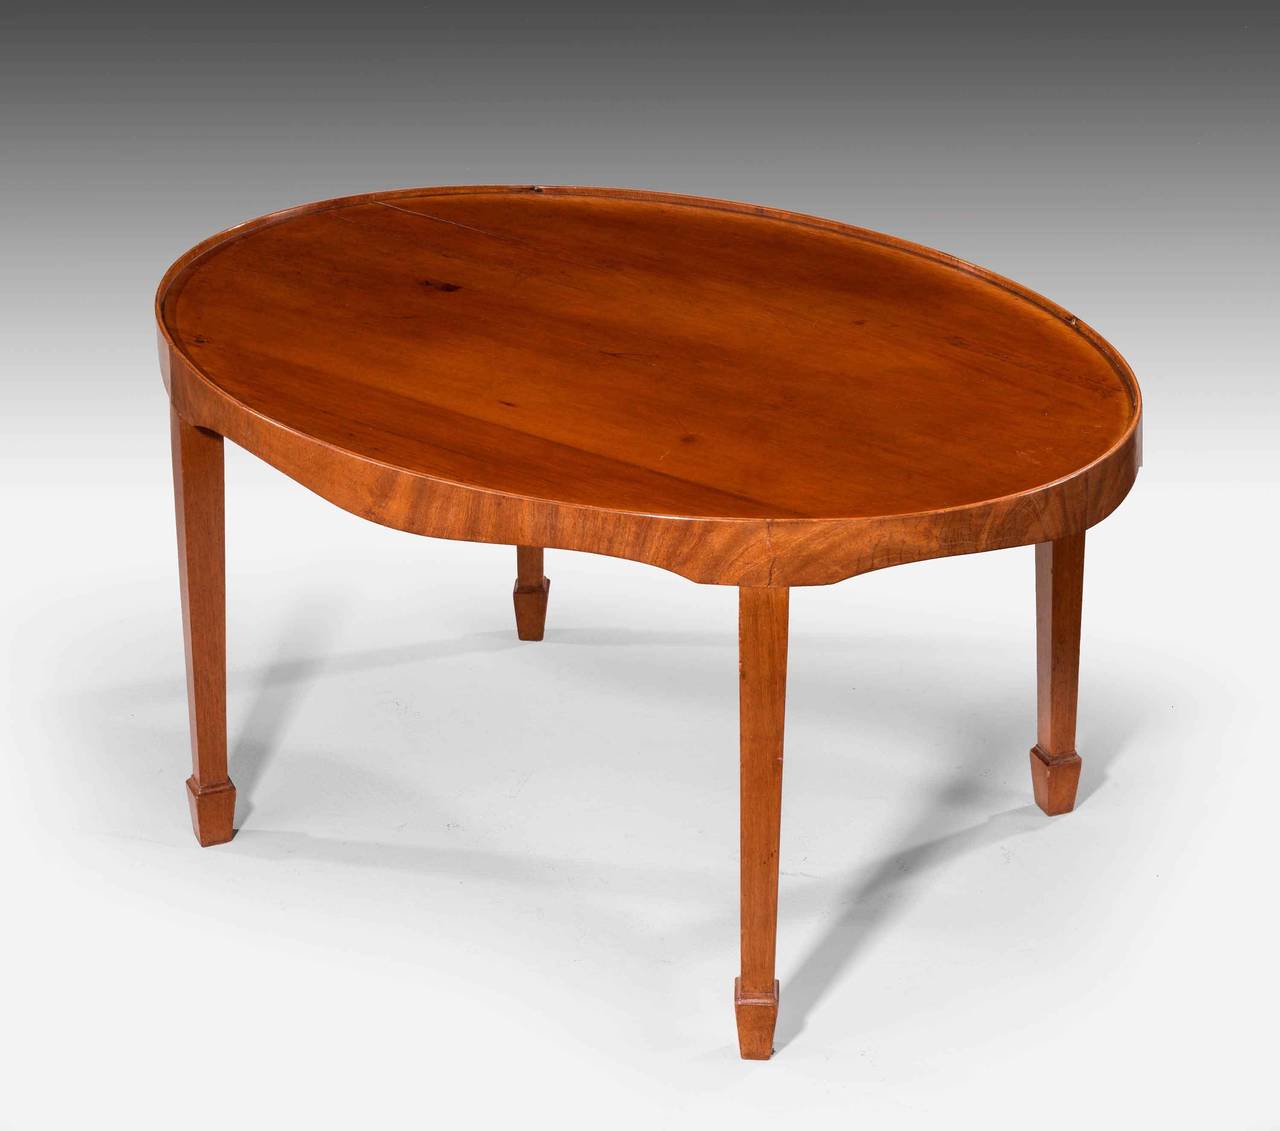 George III Style Oval Mahogany Tray Table 1